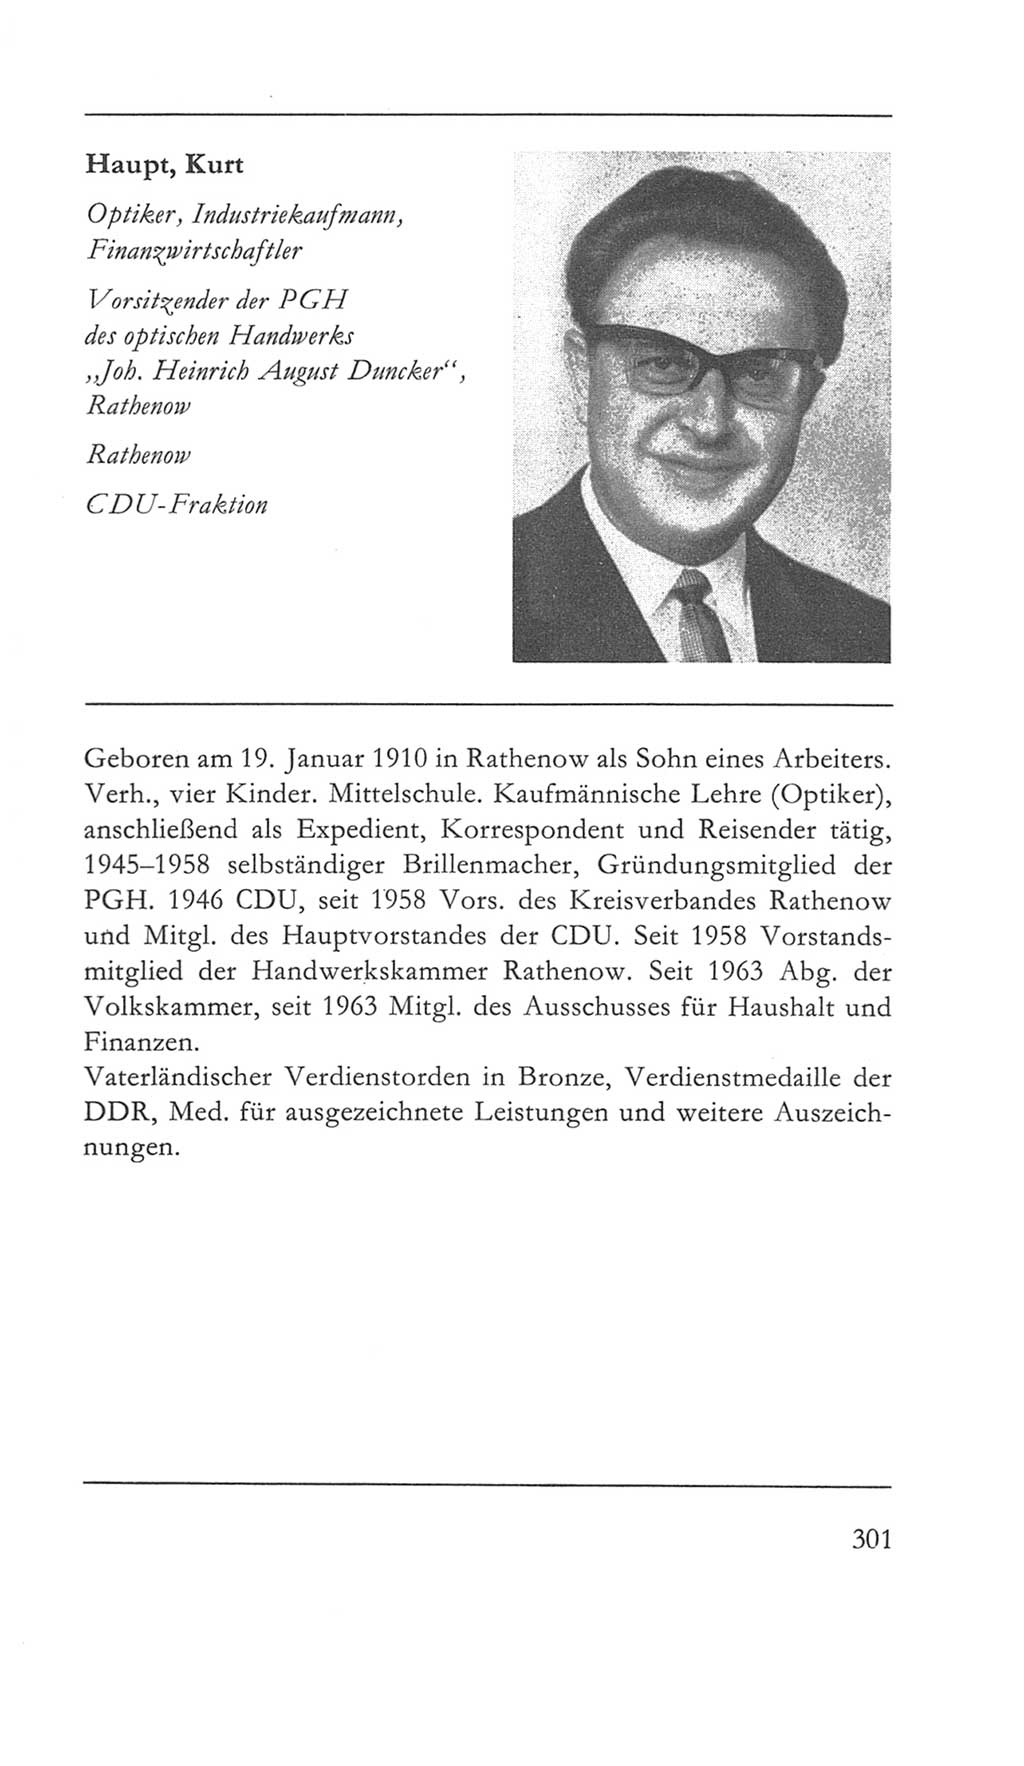 Volkskammer (VK) der Deutschen Demokratischen Republik (DDR) 5. Wahlperiode 1967-1971, Seite 301 (VK. DDR 5. WP. 1967-1971, S. 301)